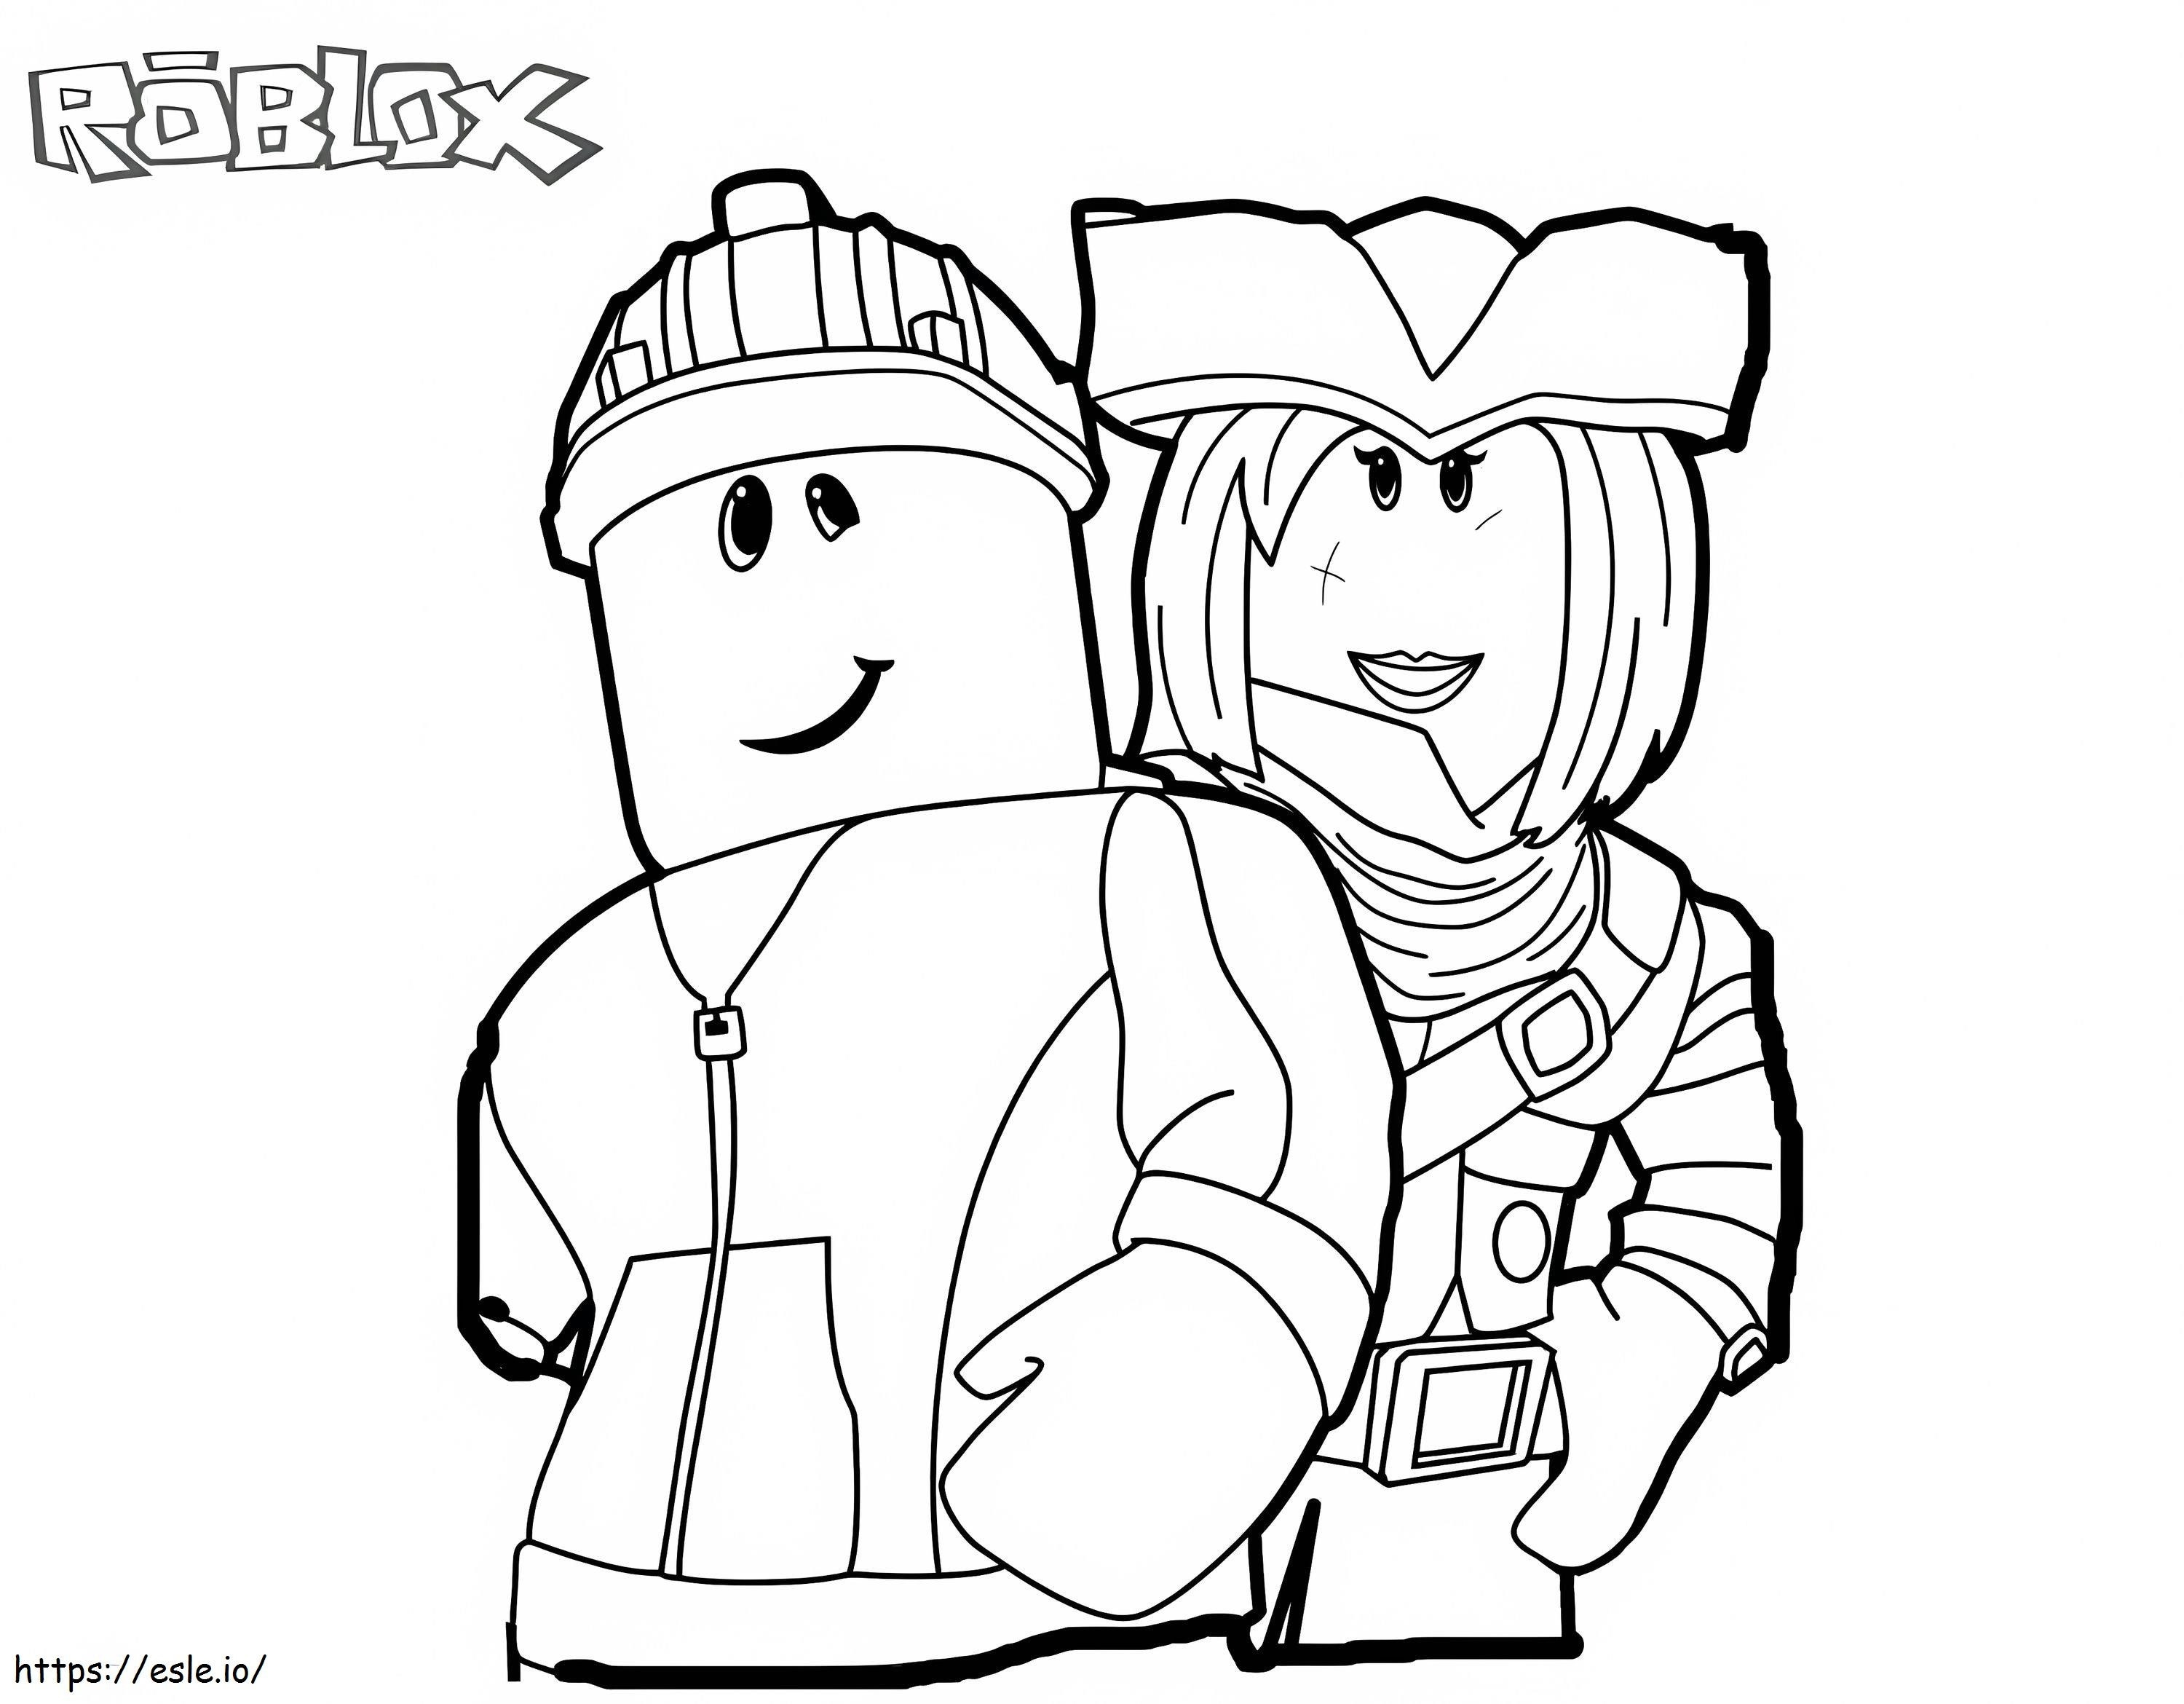 Coloriage Roblox avec deux personnages à imprimer dessin